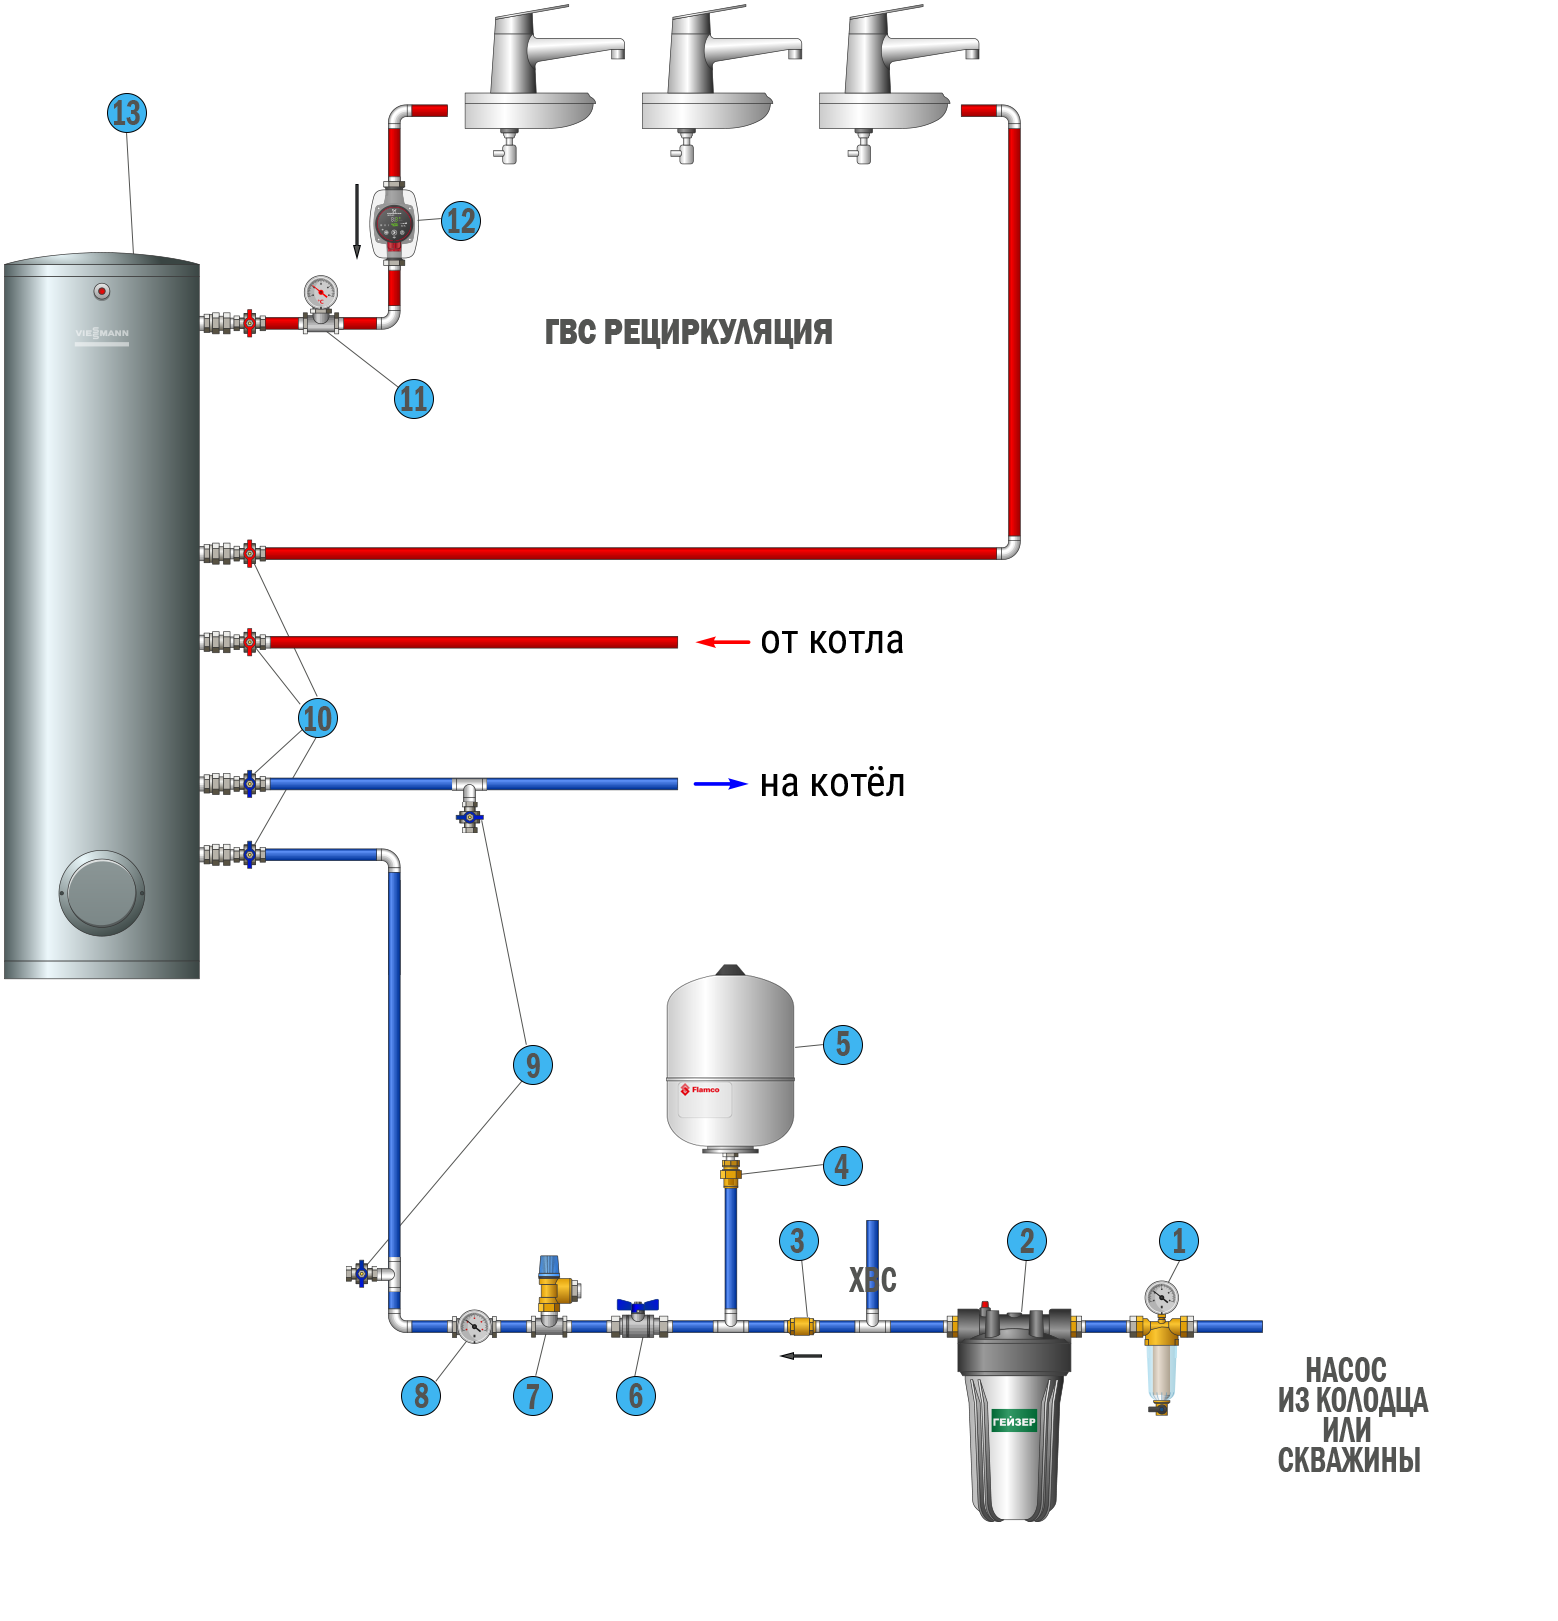 Конструкция и принцип работы бойлера косвенного нагрева Плюсы и минусы устройства Схемы подключения БКН к системе отопления и монтаж рециркуляционного контура